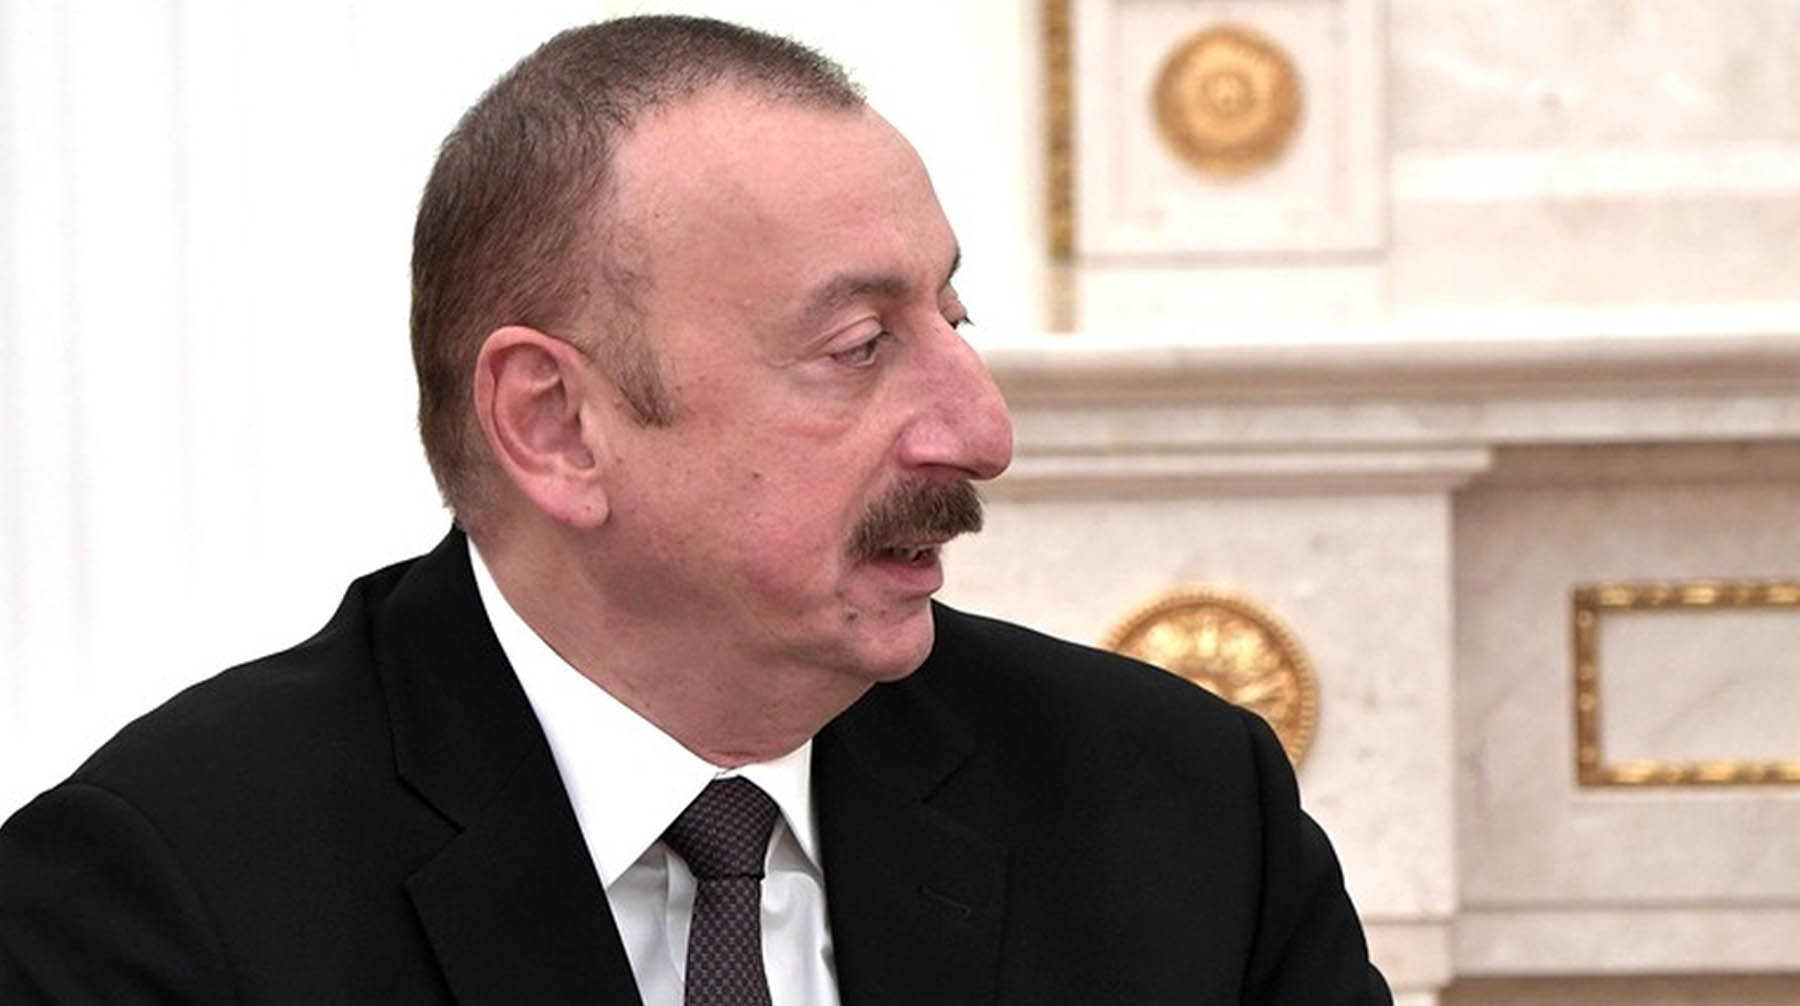 К поражению причастен не только премьер-министр Никол Пашинян, подчеркнул президент Азербайджана Фото: © Global Look Press / Kremlin Pool